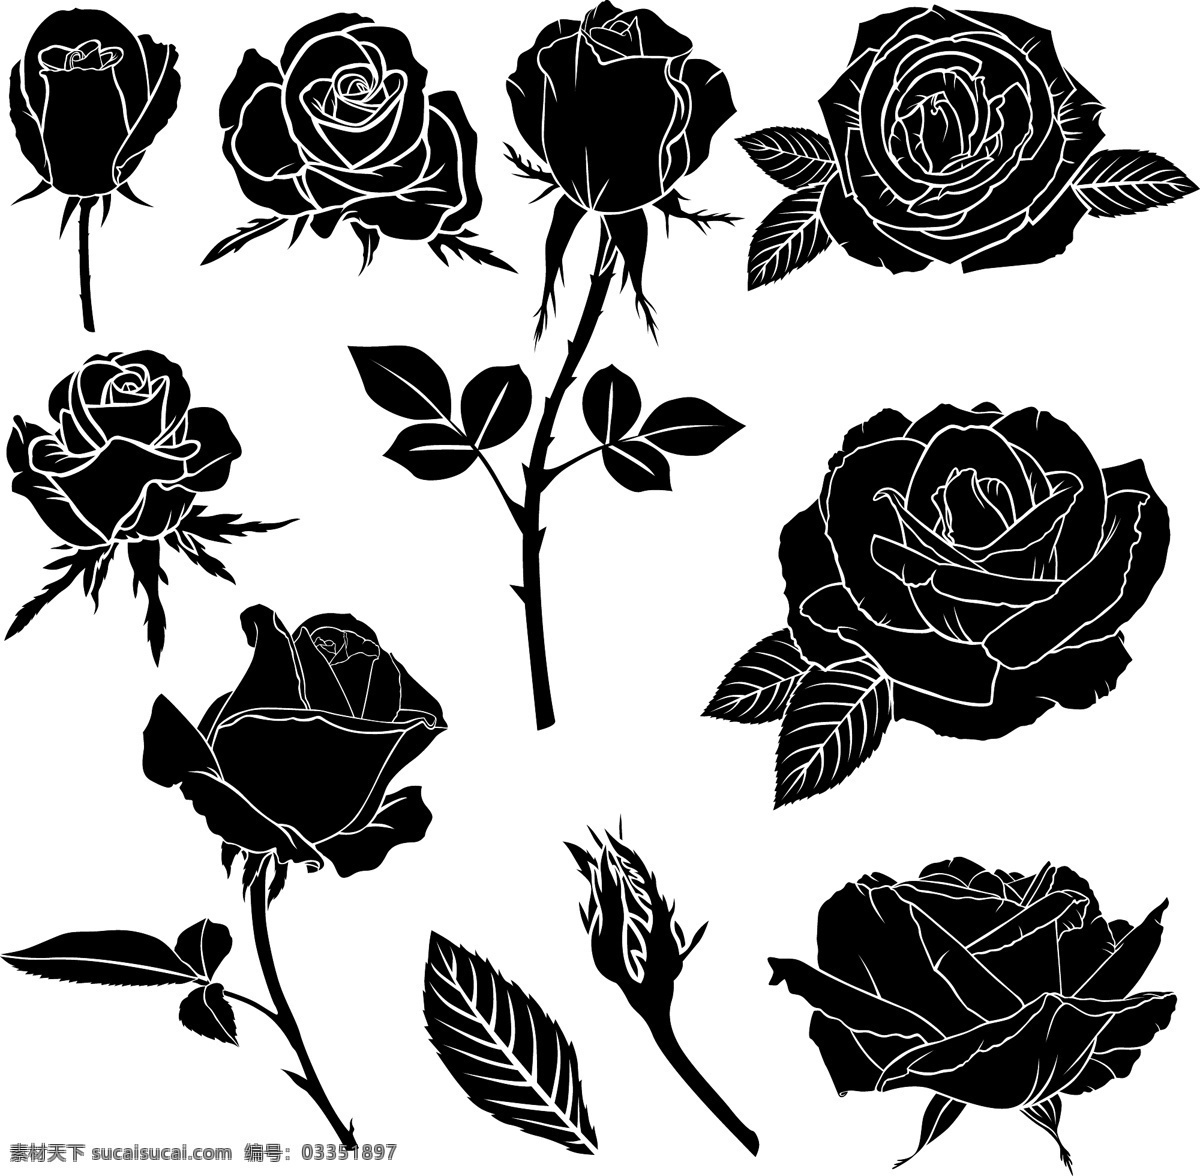 黑白 时尚 剪影 玫瑰花 植物 插画 花苞 花朵 叶子